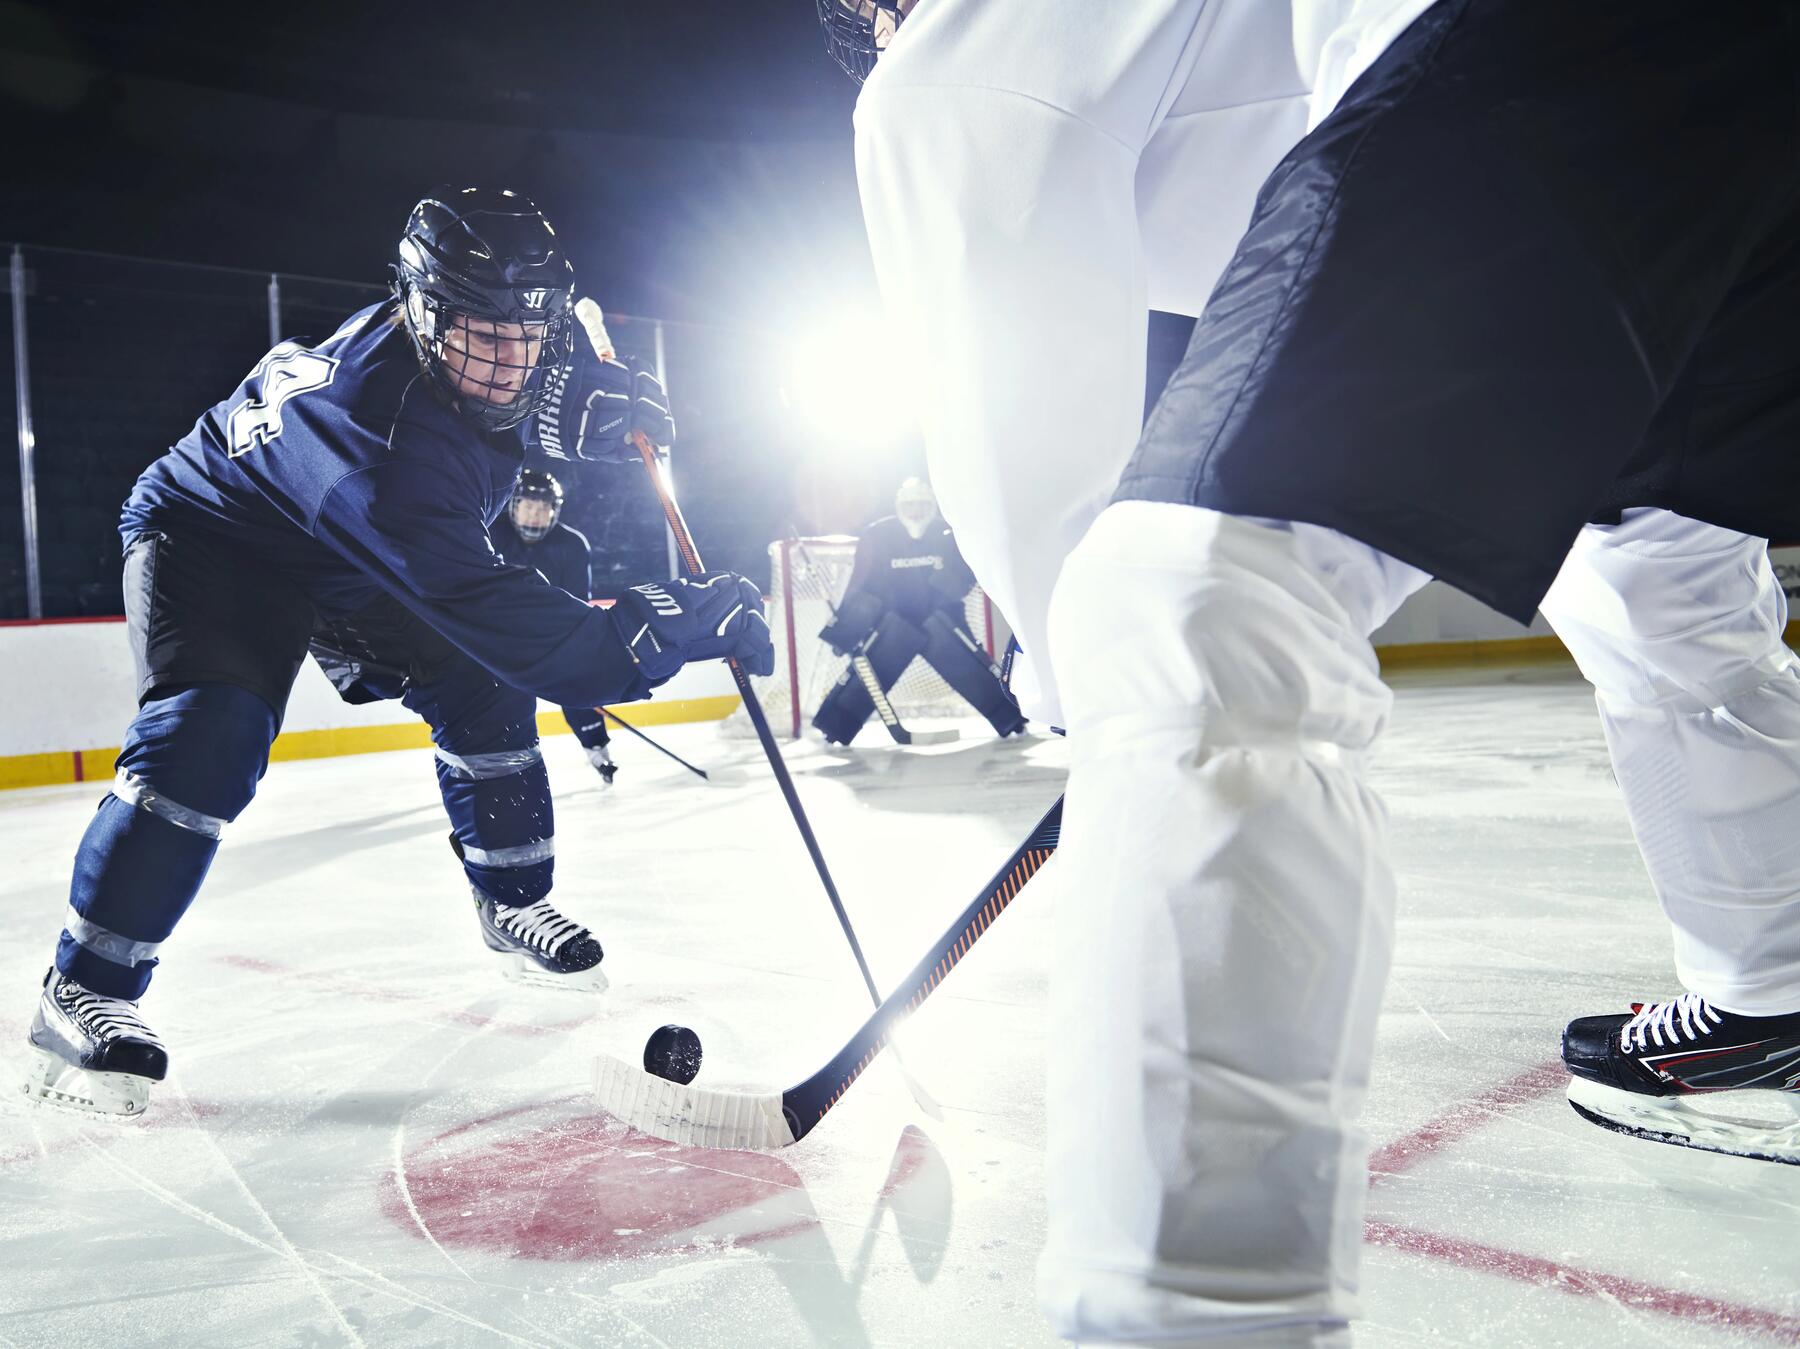 gracze w odzieży i kaskach hokejowych na lodowisku